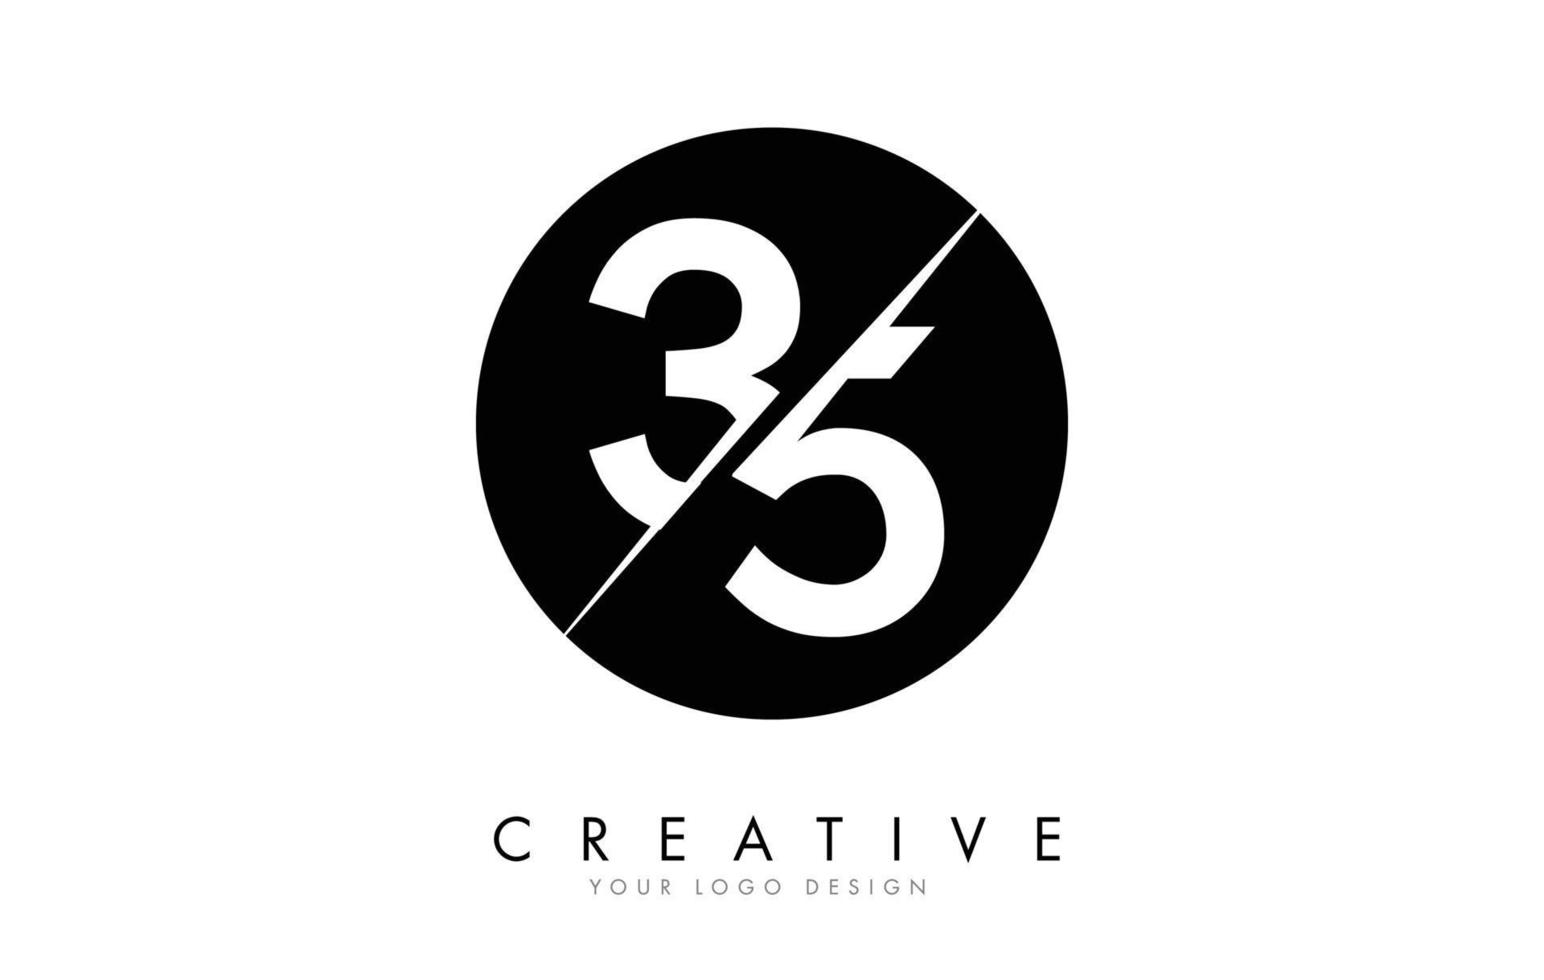 Création de logo à 35 3 5 numéros avec une coupe créative et un fond de cercle noir. vecteur